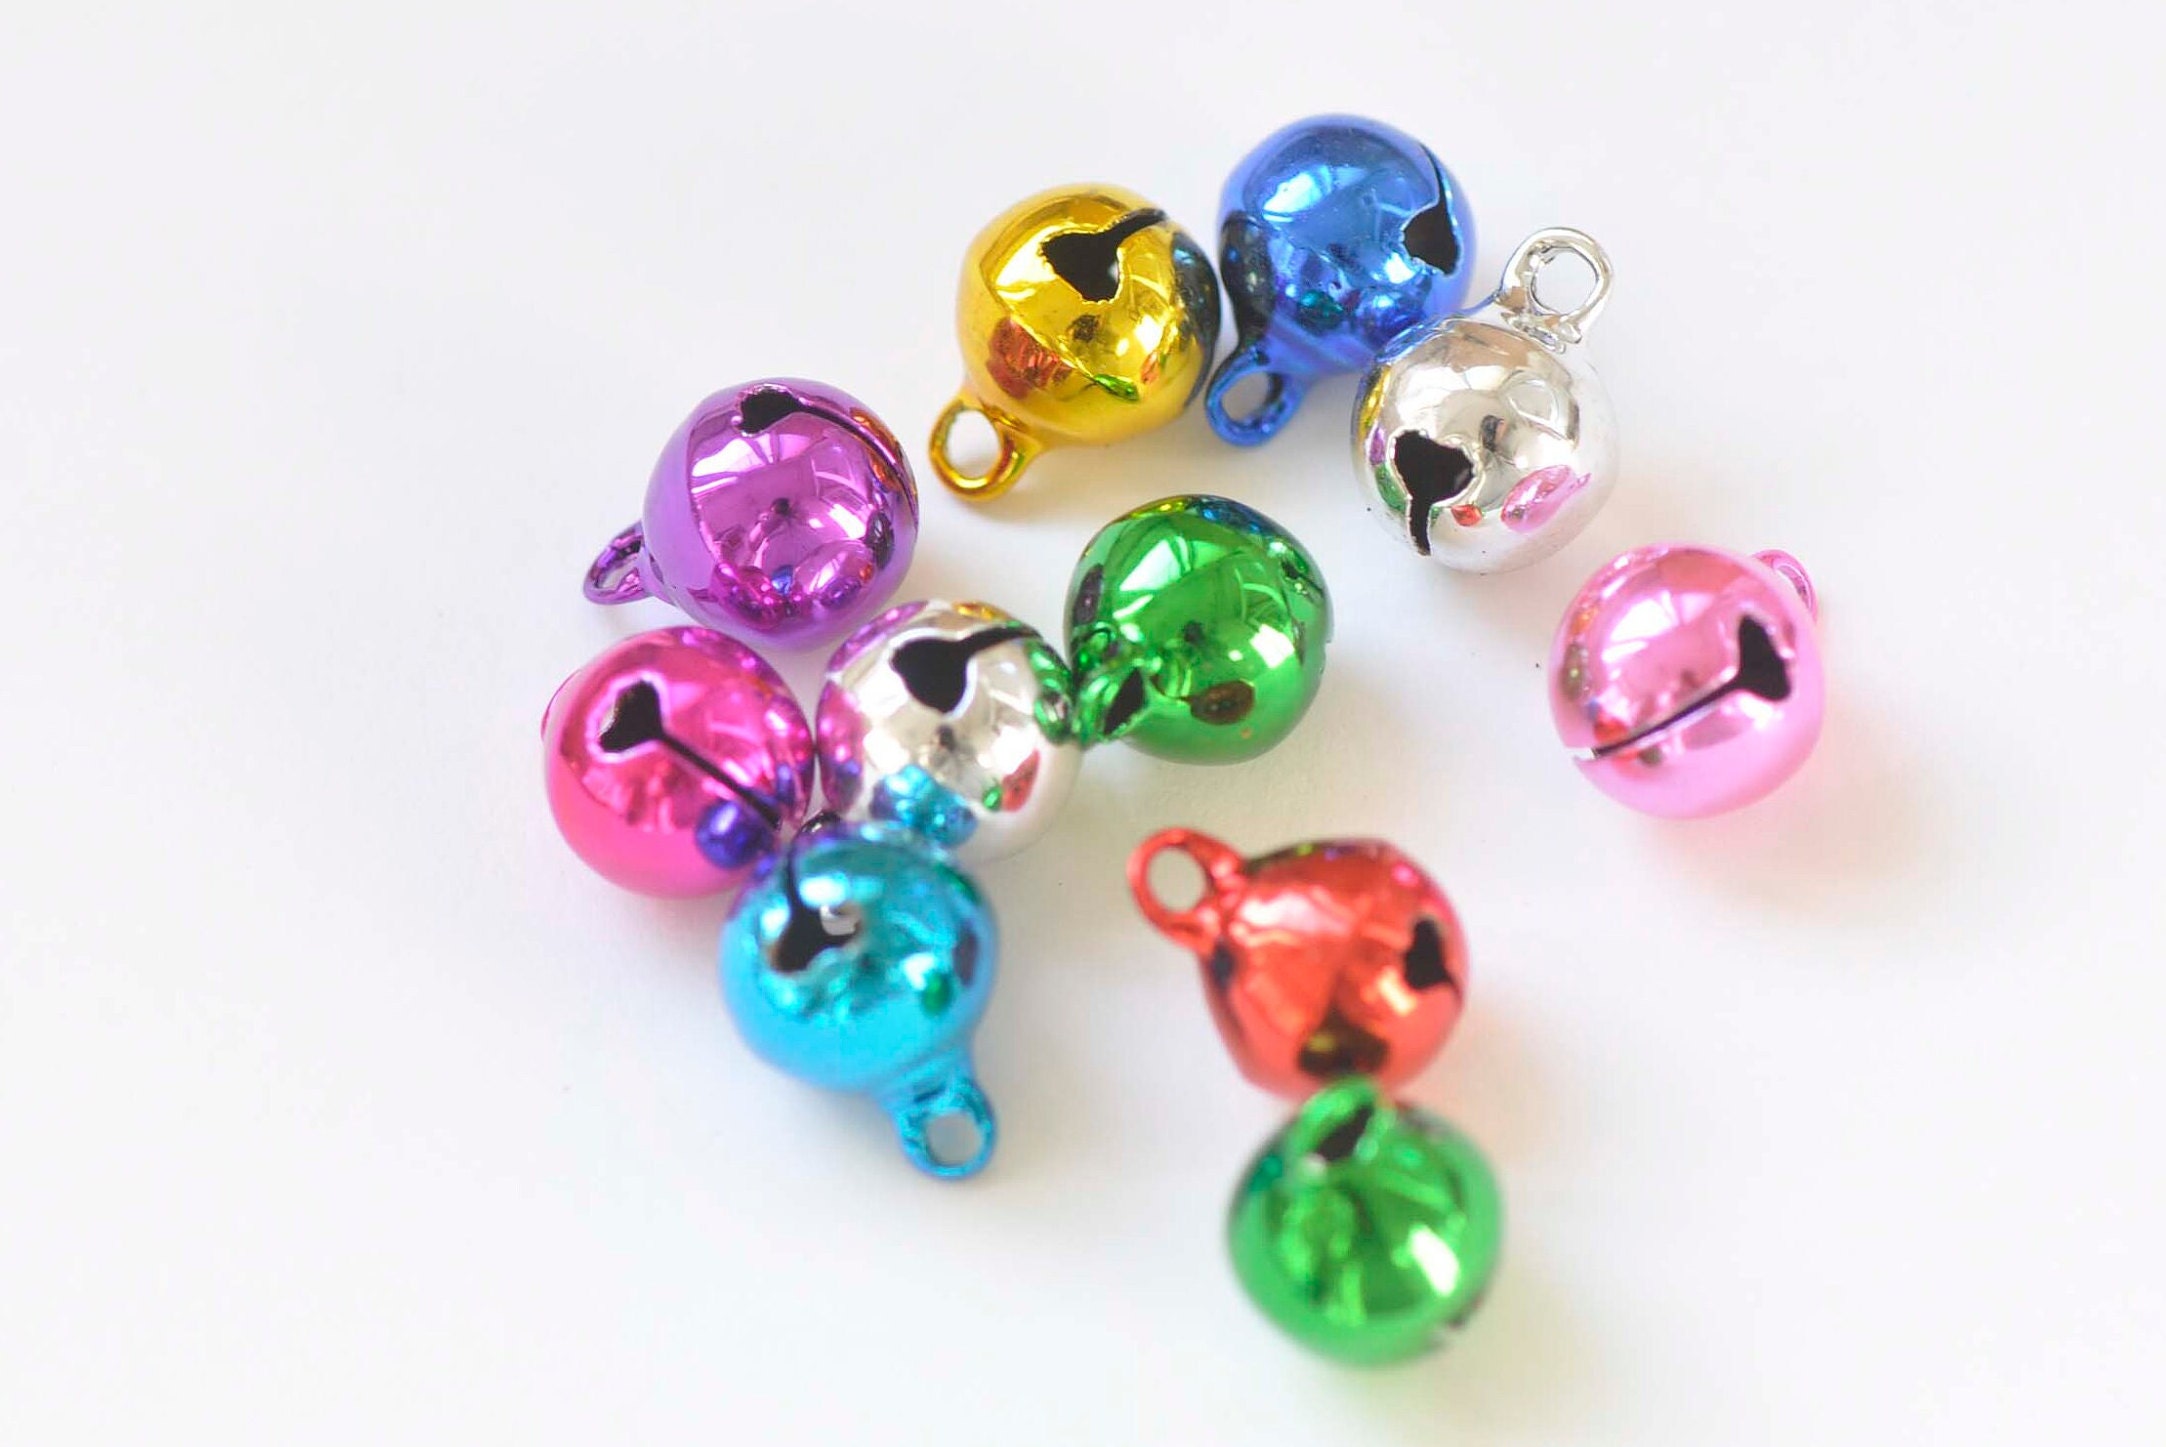 Mini JINGLE BELLS 8mm Bright Jewel Mix Top Loop for Stringing Doll